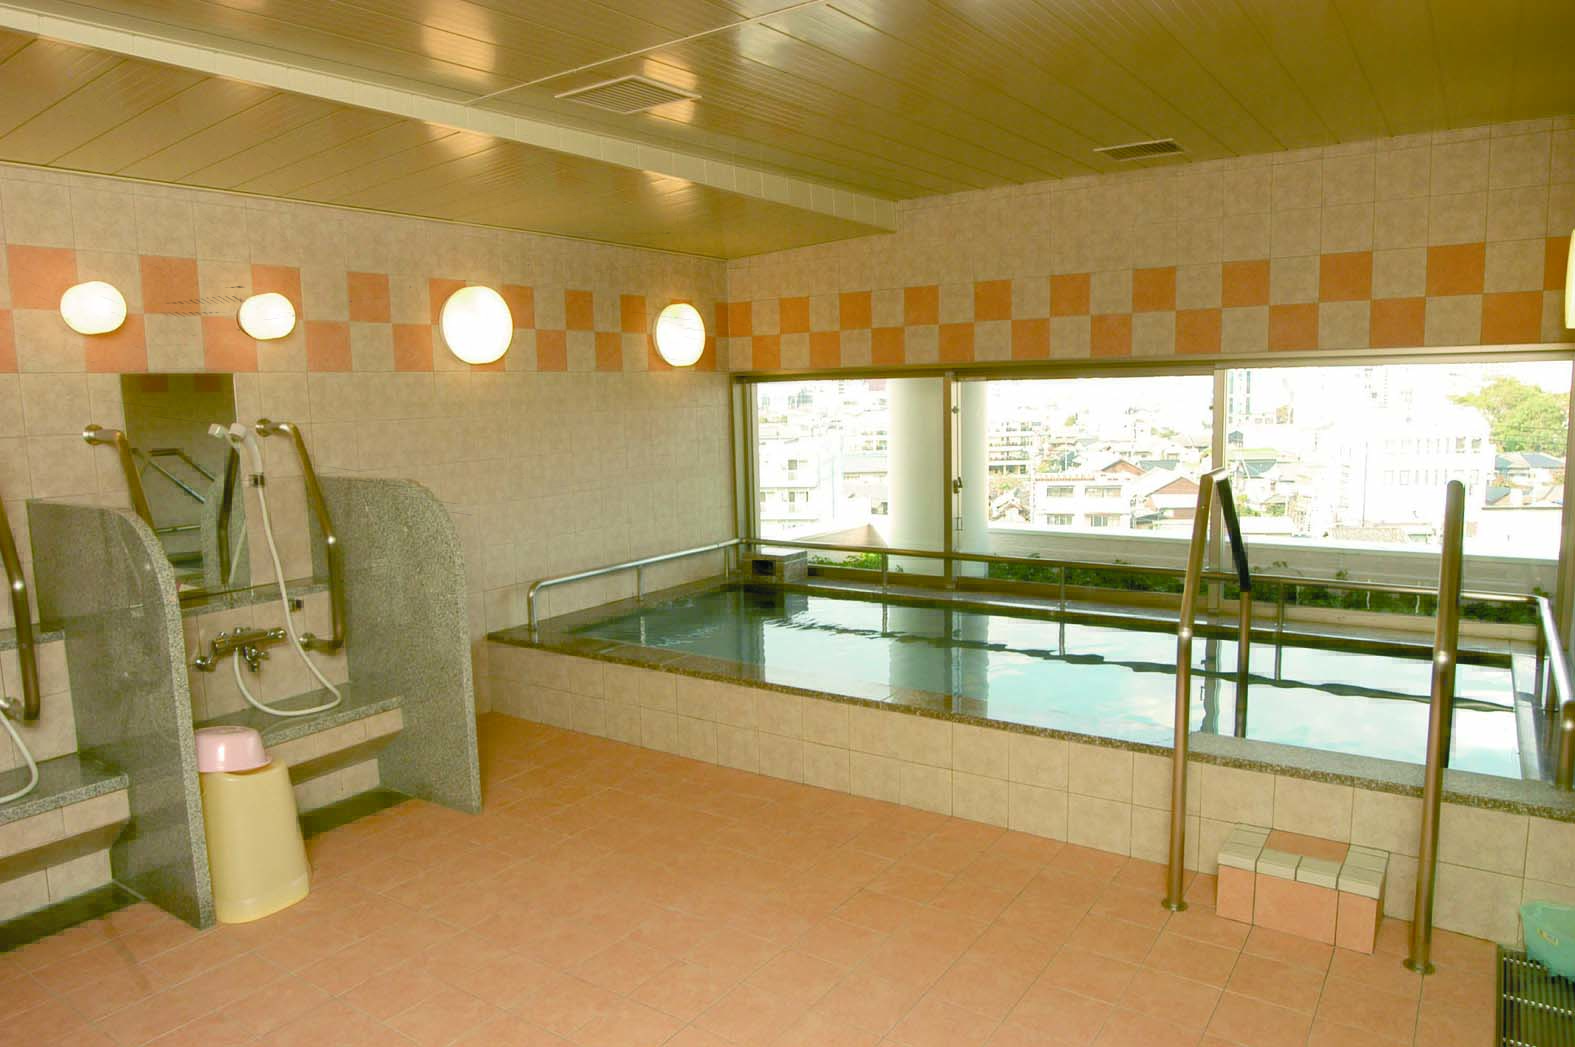 鶴形山、倉敷市街を一望できる展望浴場。 ちょっとした温泉気分を味わっていただけるように、ヨーロッパ流炭酸泉浴を用意しています。